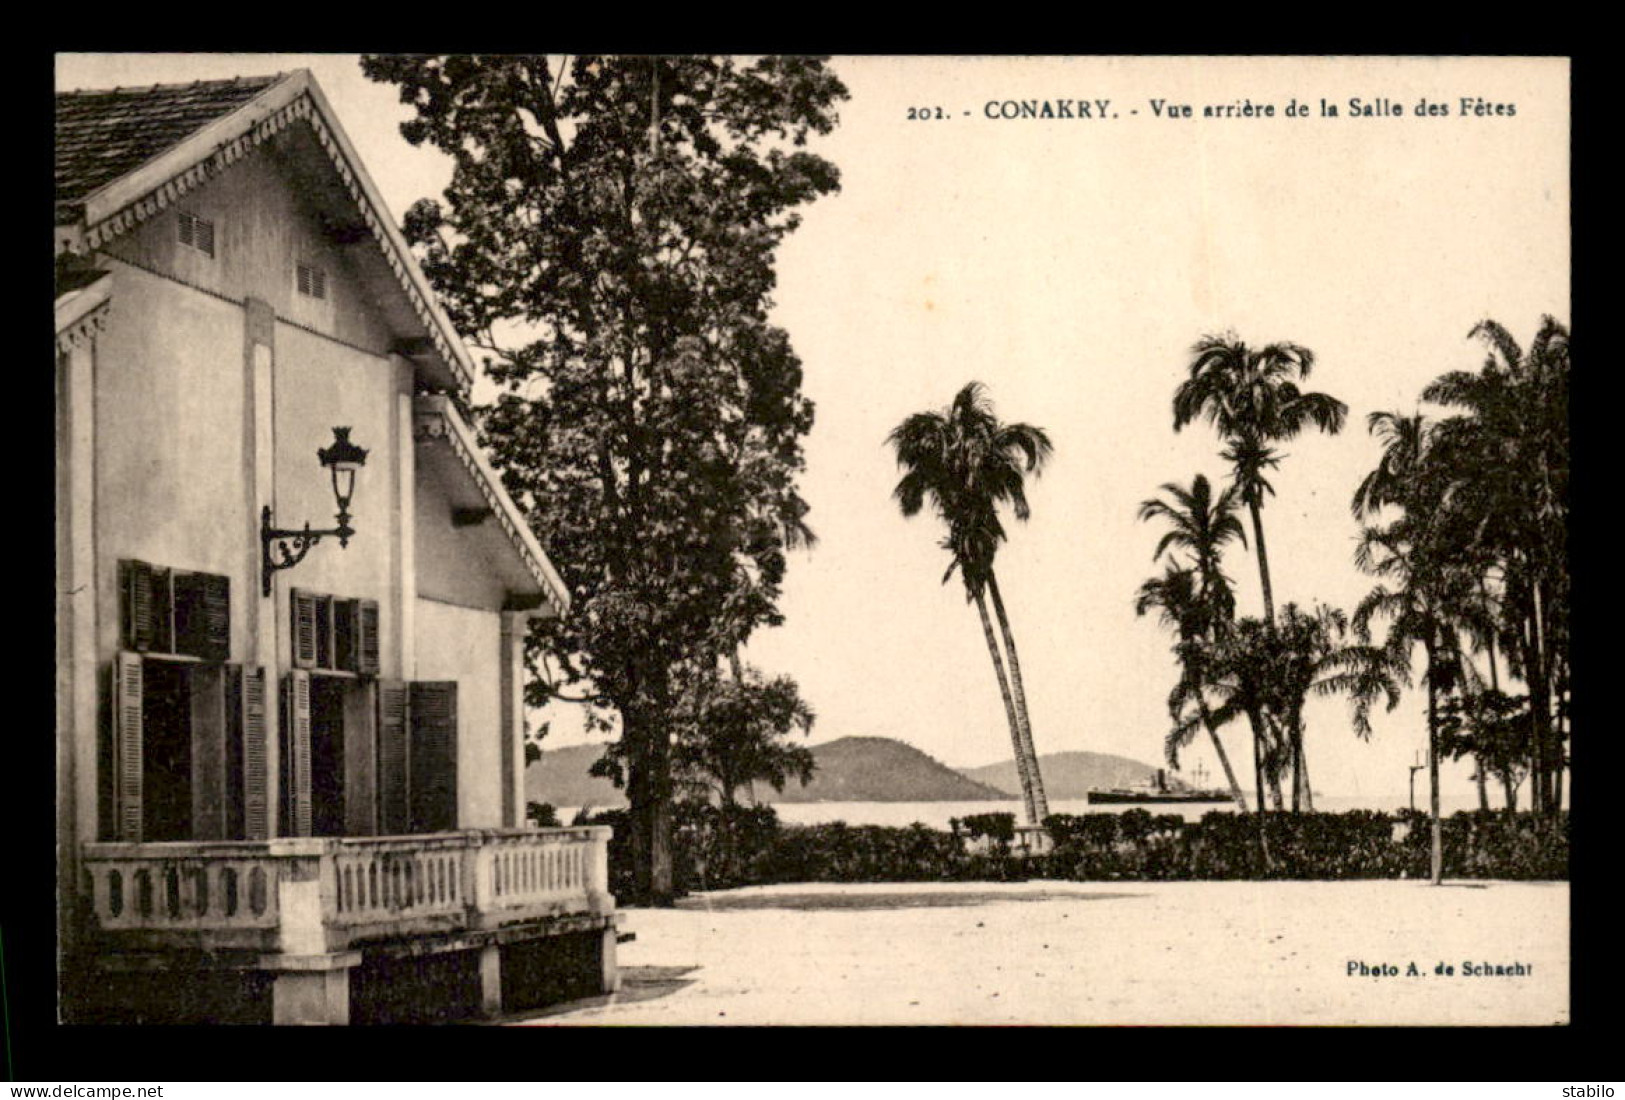 GUINEE - CONAKRY - VUE ARRIERE DE LA SALLE DES FETES - Guinea